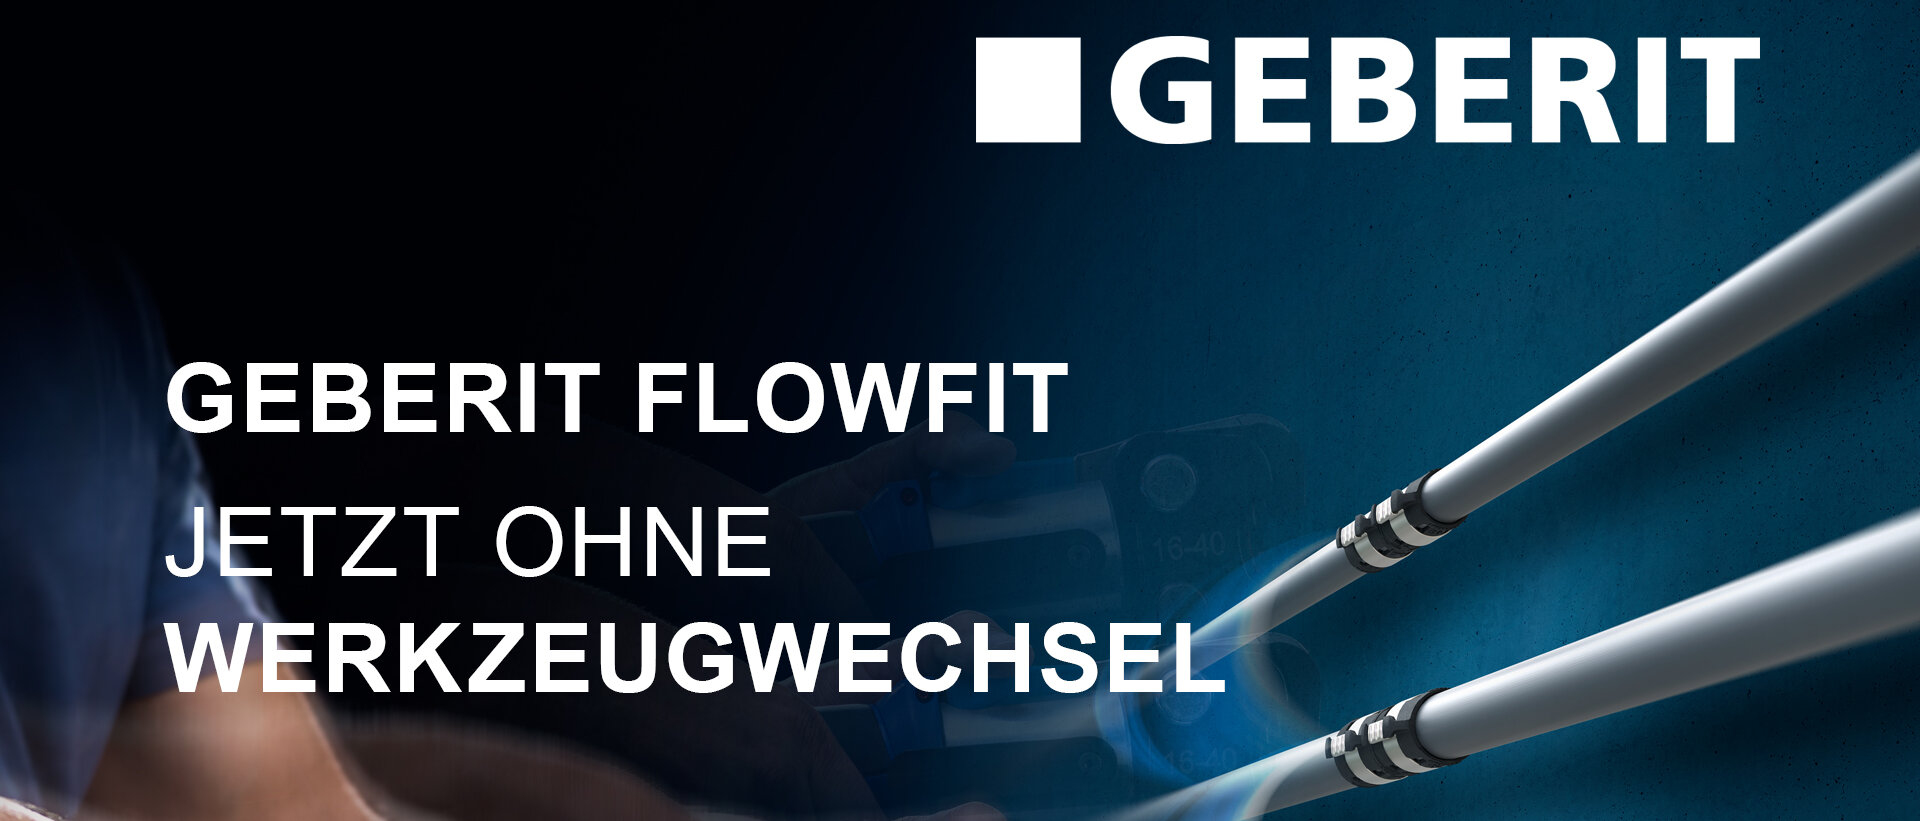 Geberit FlowFit Banner: Jetzt ohne Werkzeugwechsel